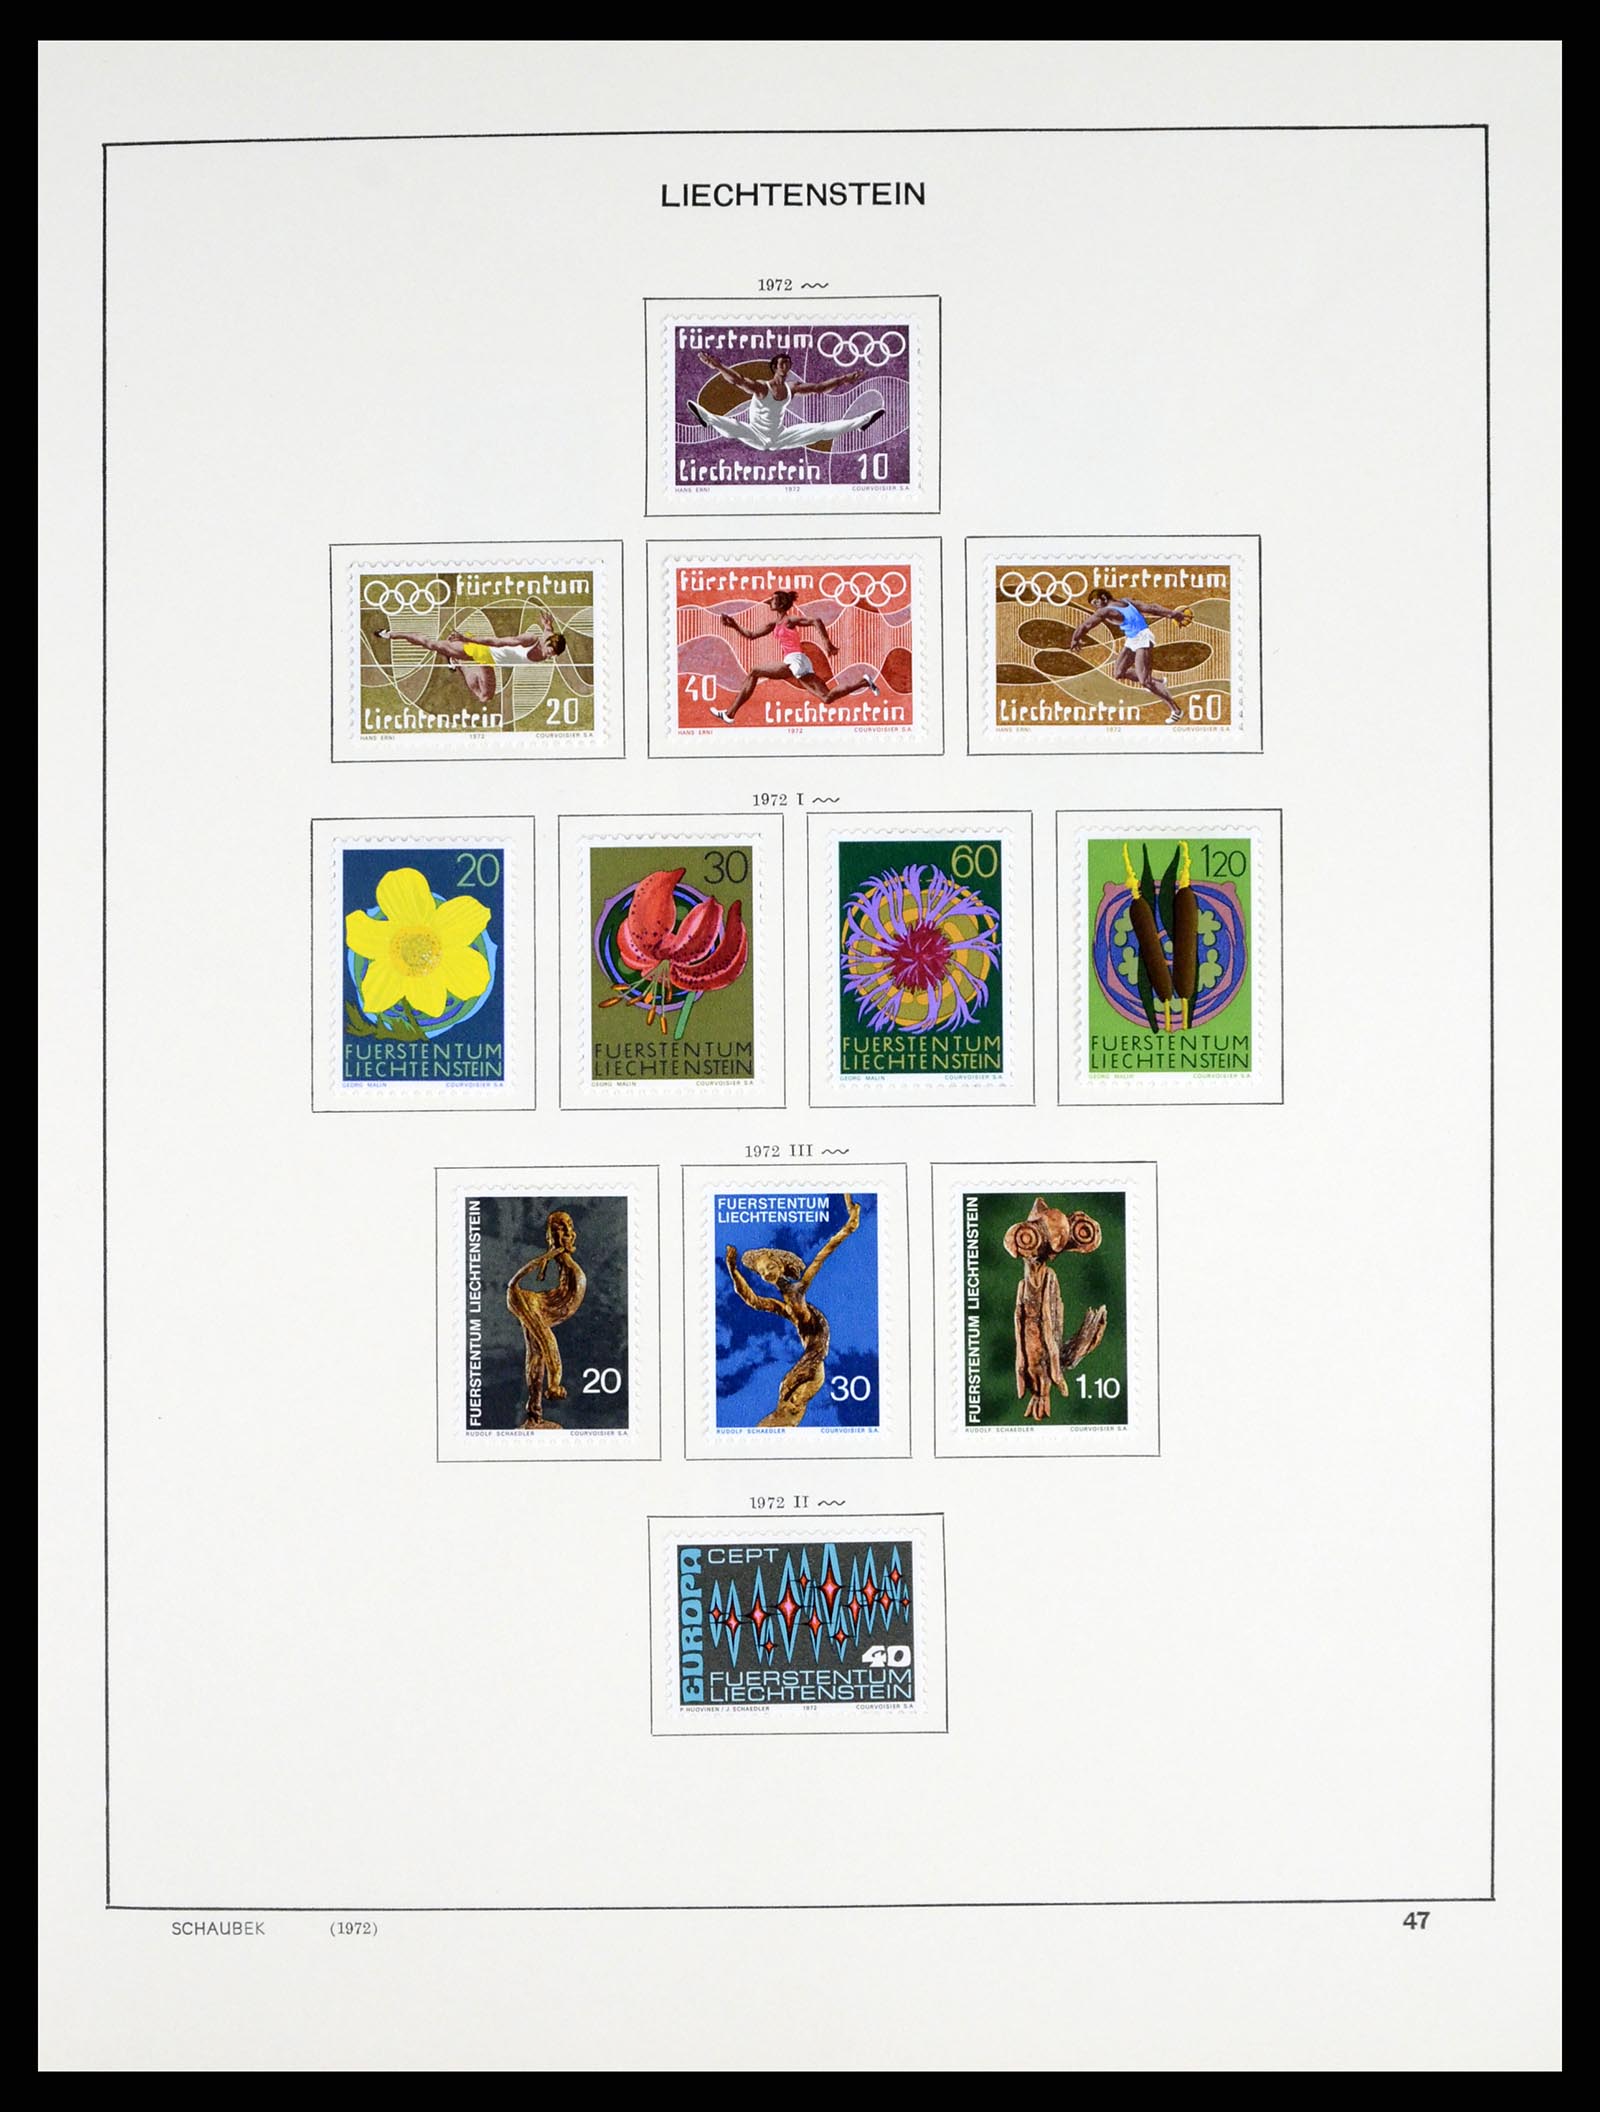 37547 058 - Stamp collection 37547 Liechtenstein 1912-2011.